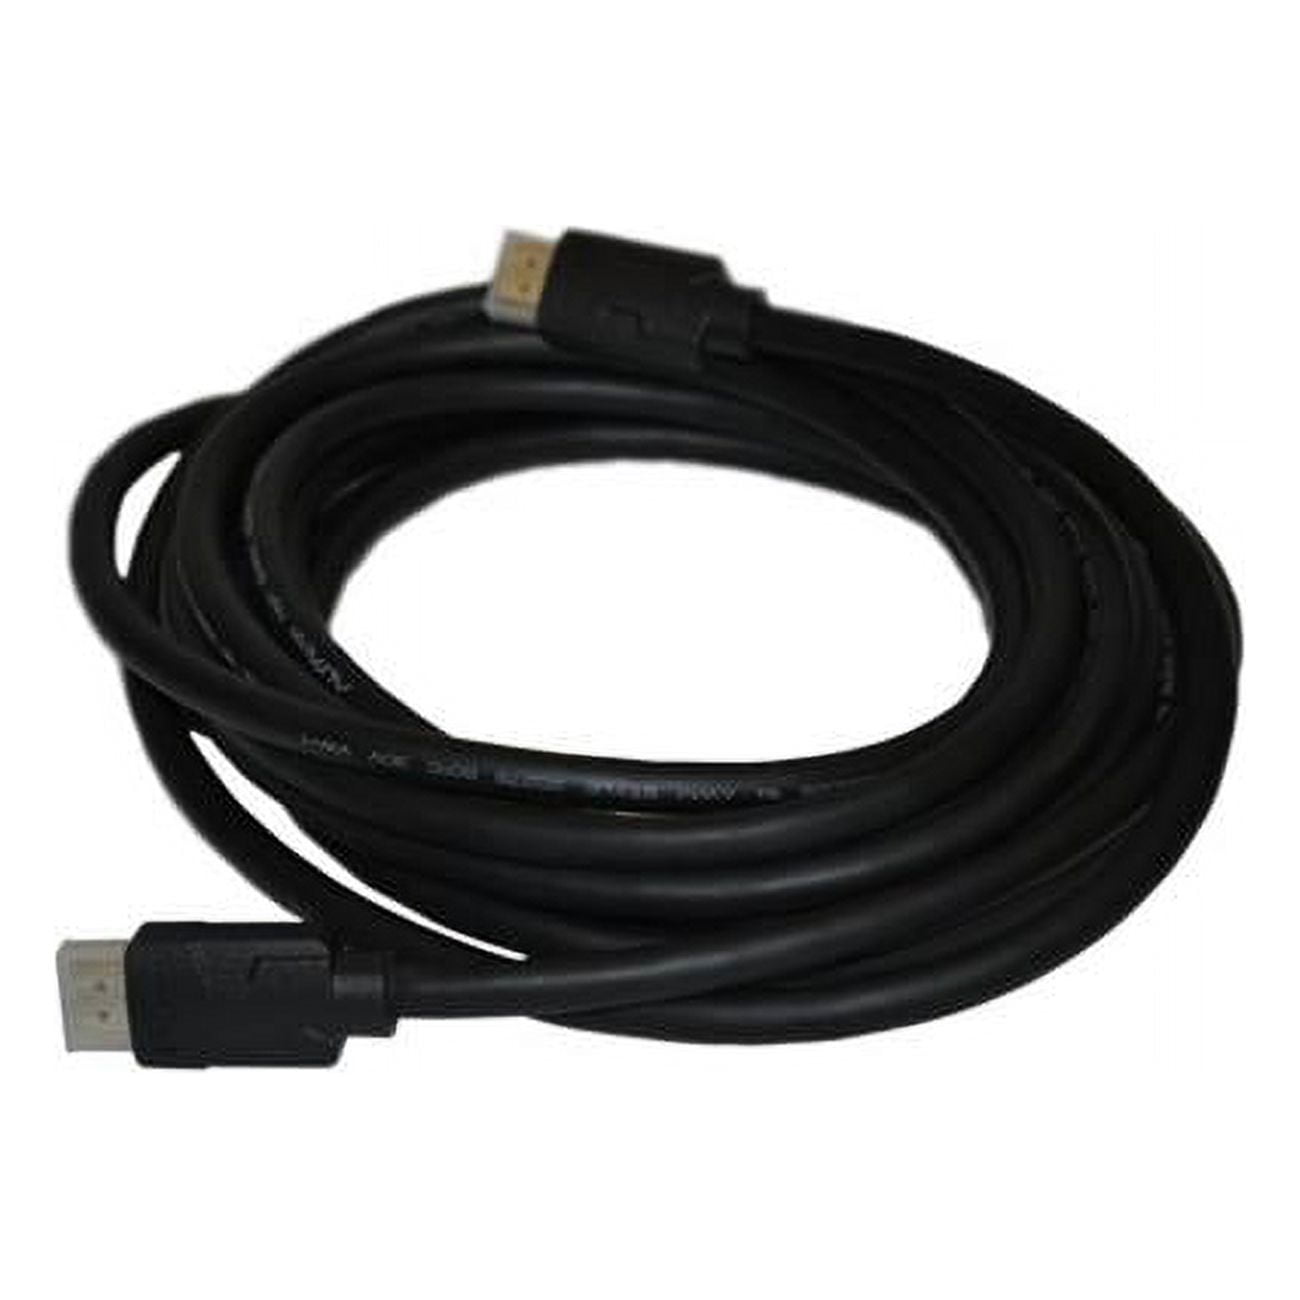 Alfatron ALF-HDMI5 5 m HDMI Cable 